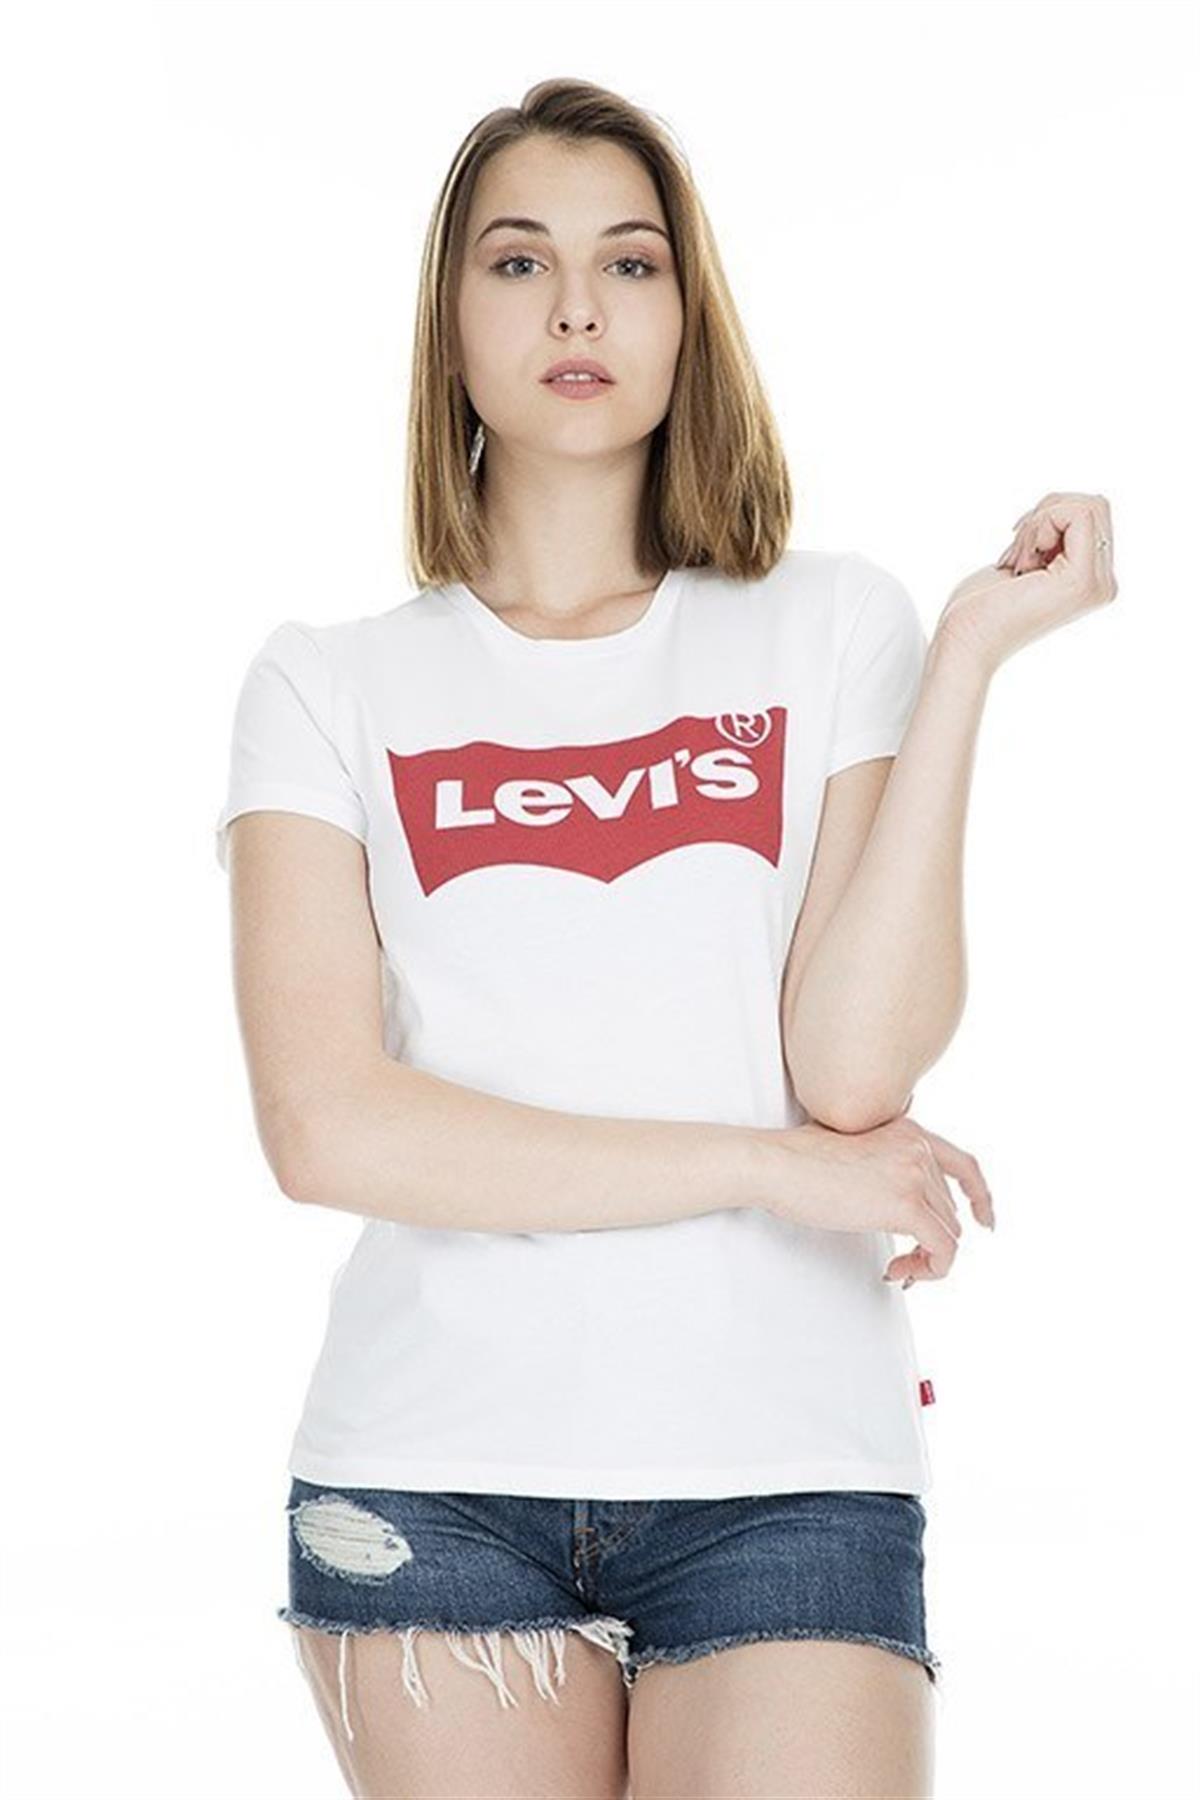 Levi's Kadın Logolu Beyaz T-shirt - 17369-0053